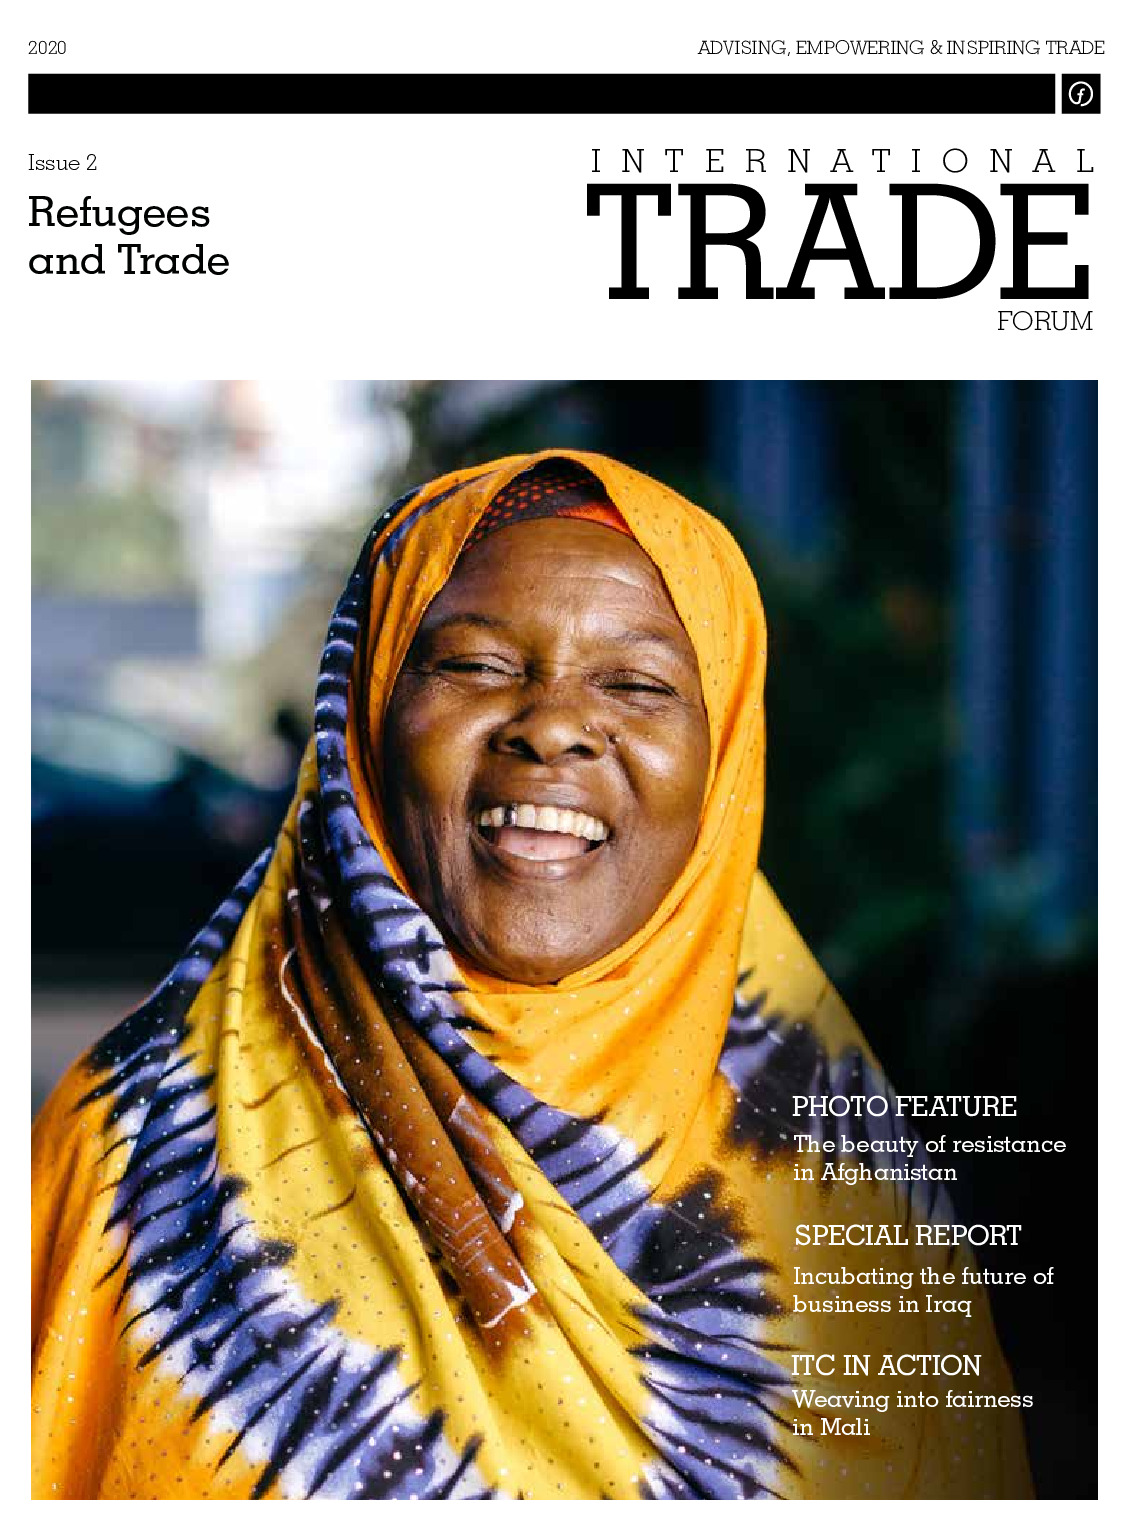 trade_forum_22020_refugees_and_trade